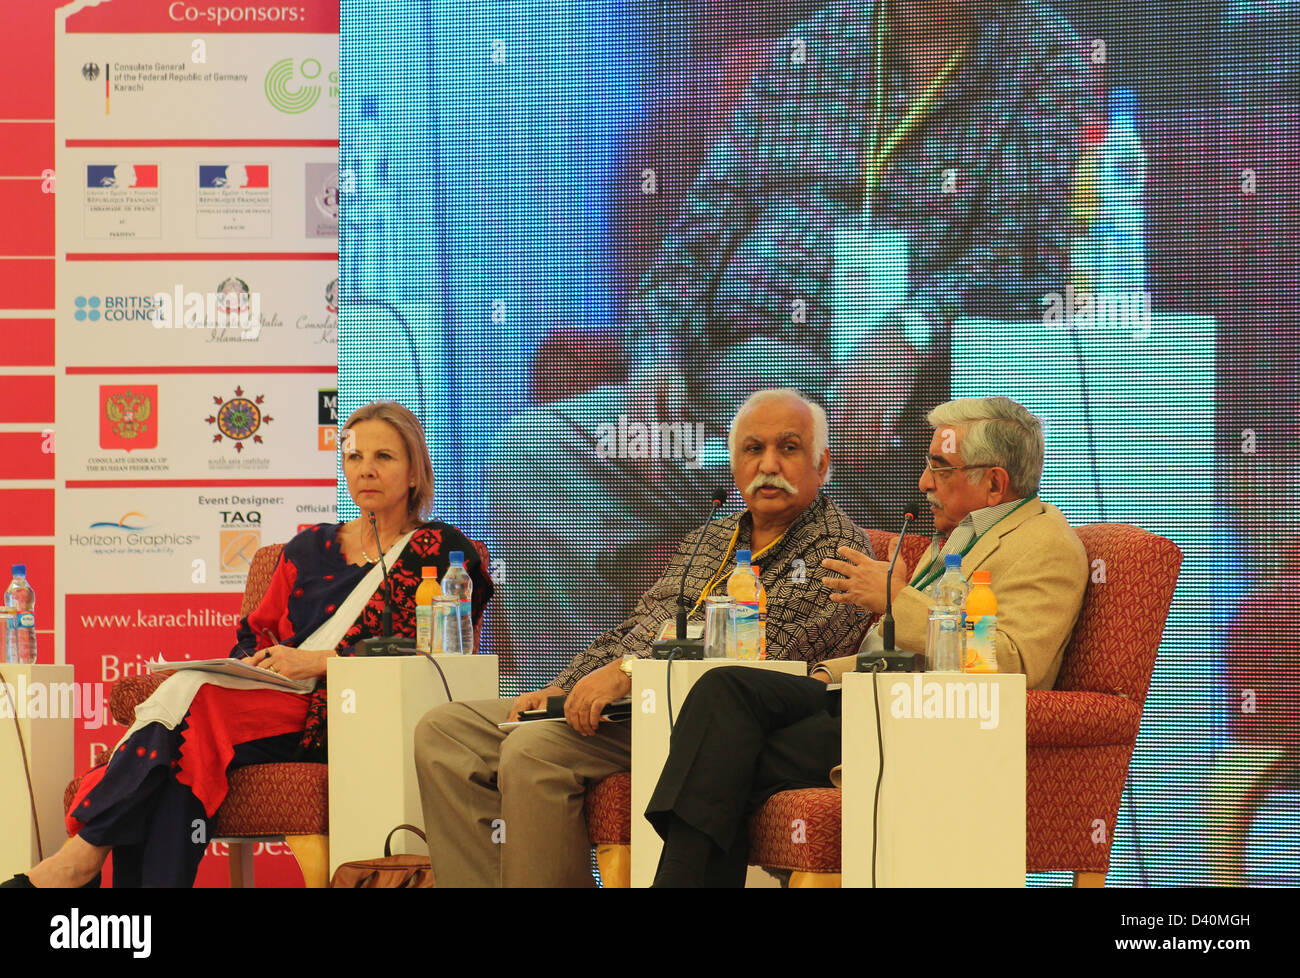 KARACHI, PAKISTAN-Février 17 : Victoria Schofield et d'autres panélistes parlent au festival de littérature de Karachi,2013. Banque D'Images